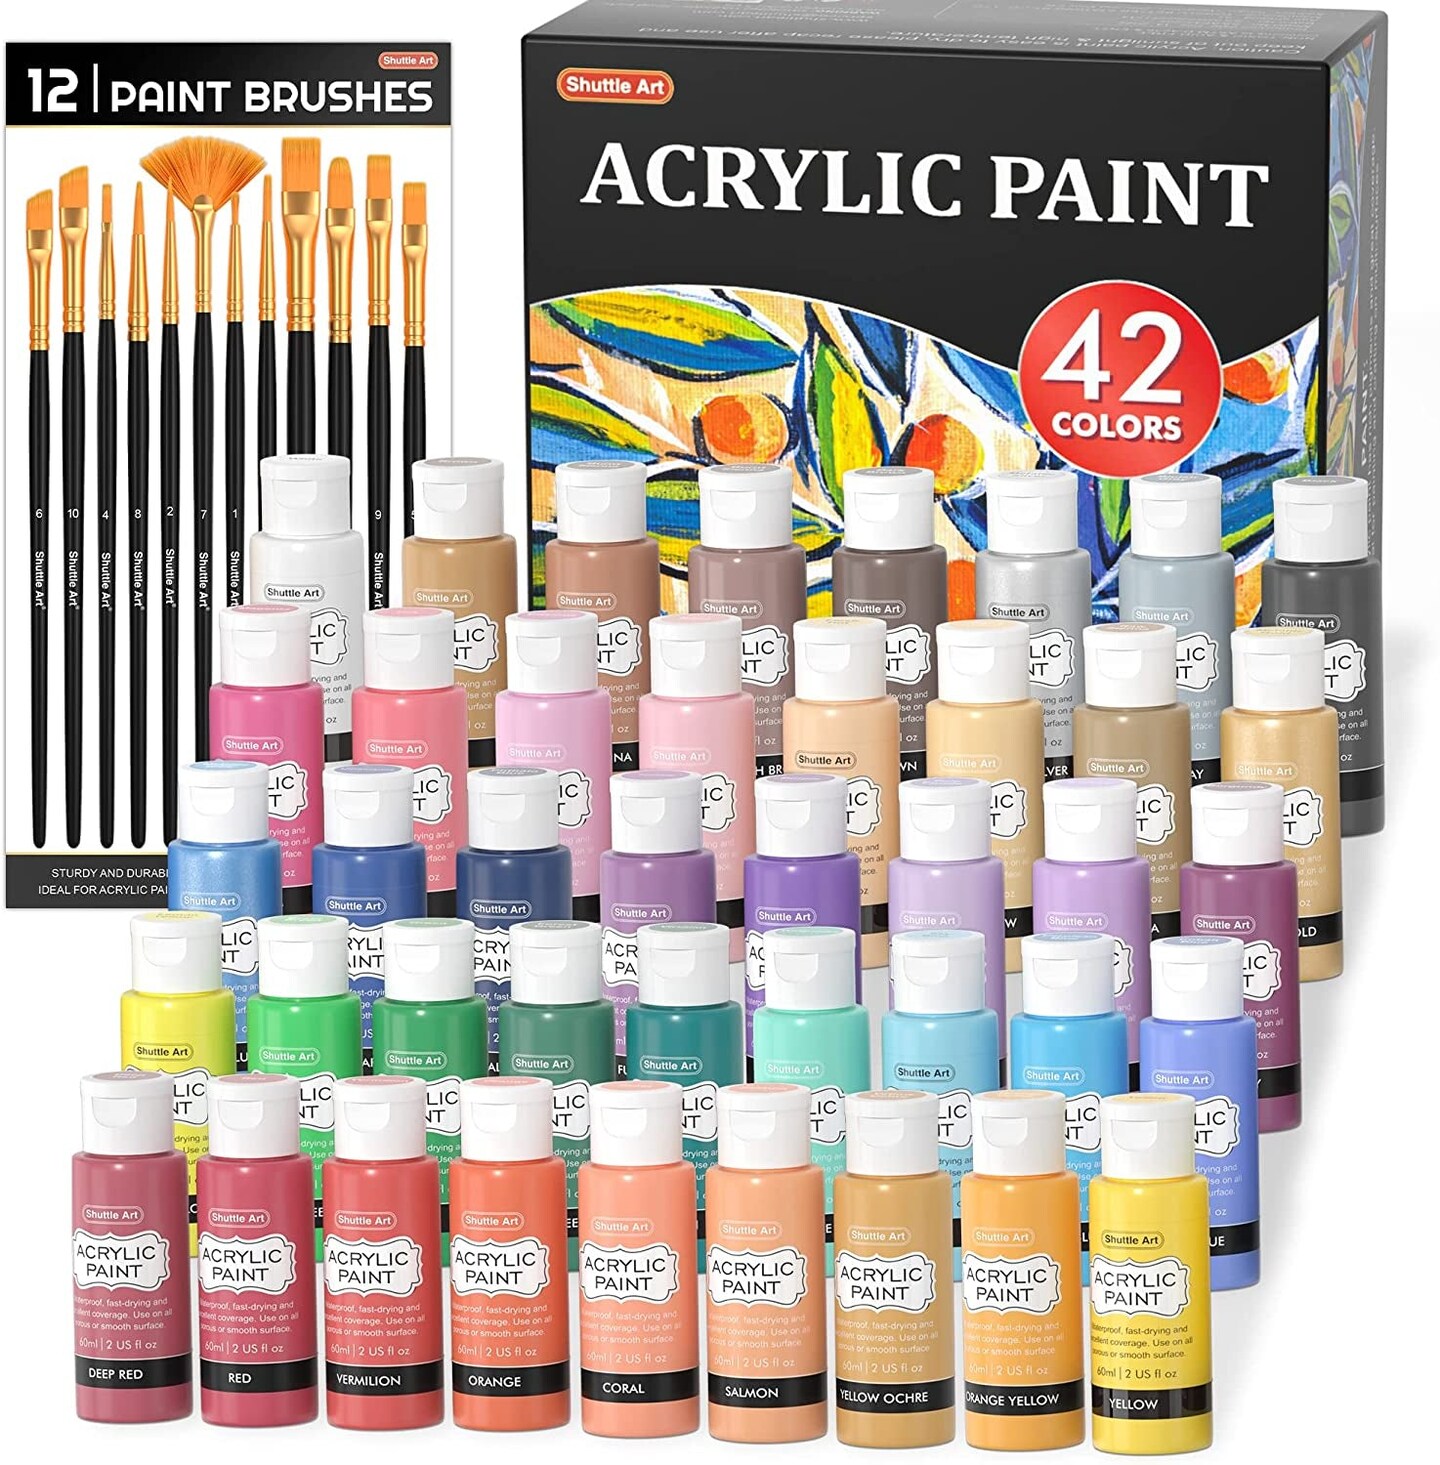 Shuttle Art Acrylic Paint 50 Colors Acrylic Paint Set 2oz/60ml Bottles Rich  Pigmented Water Proof